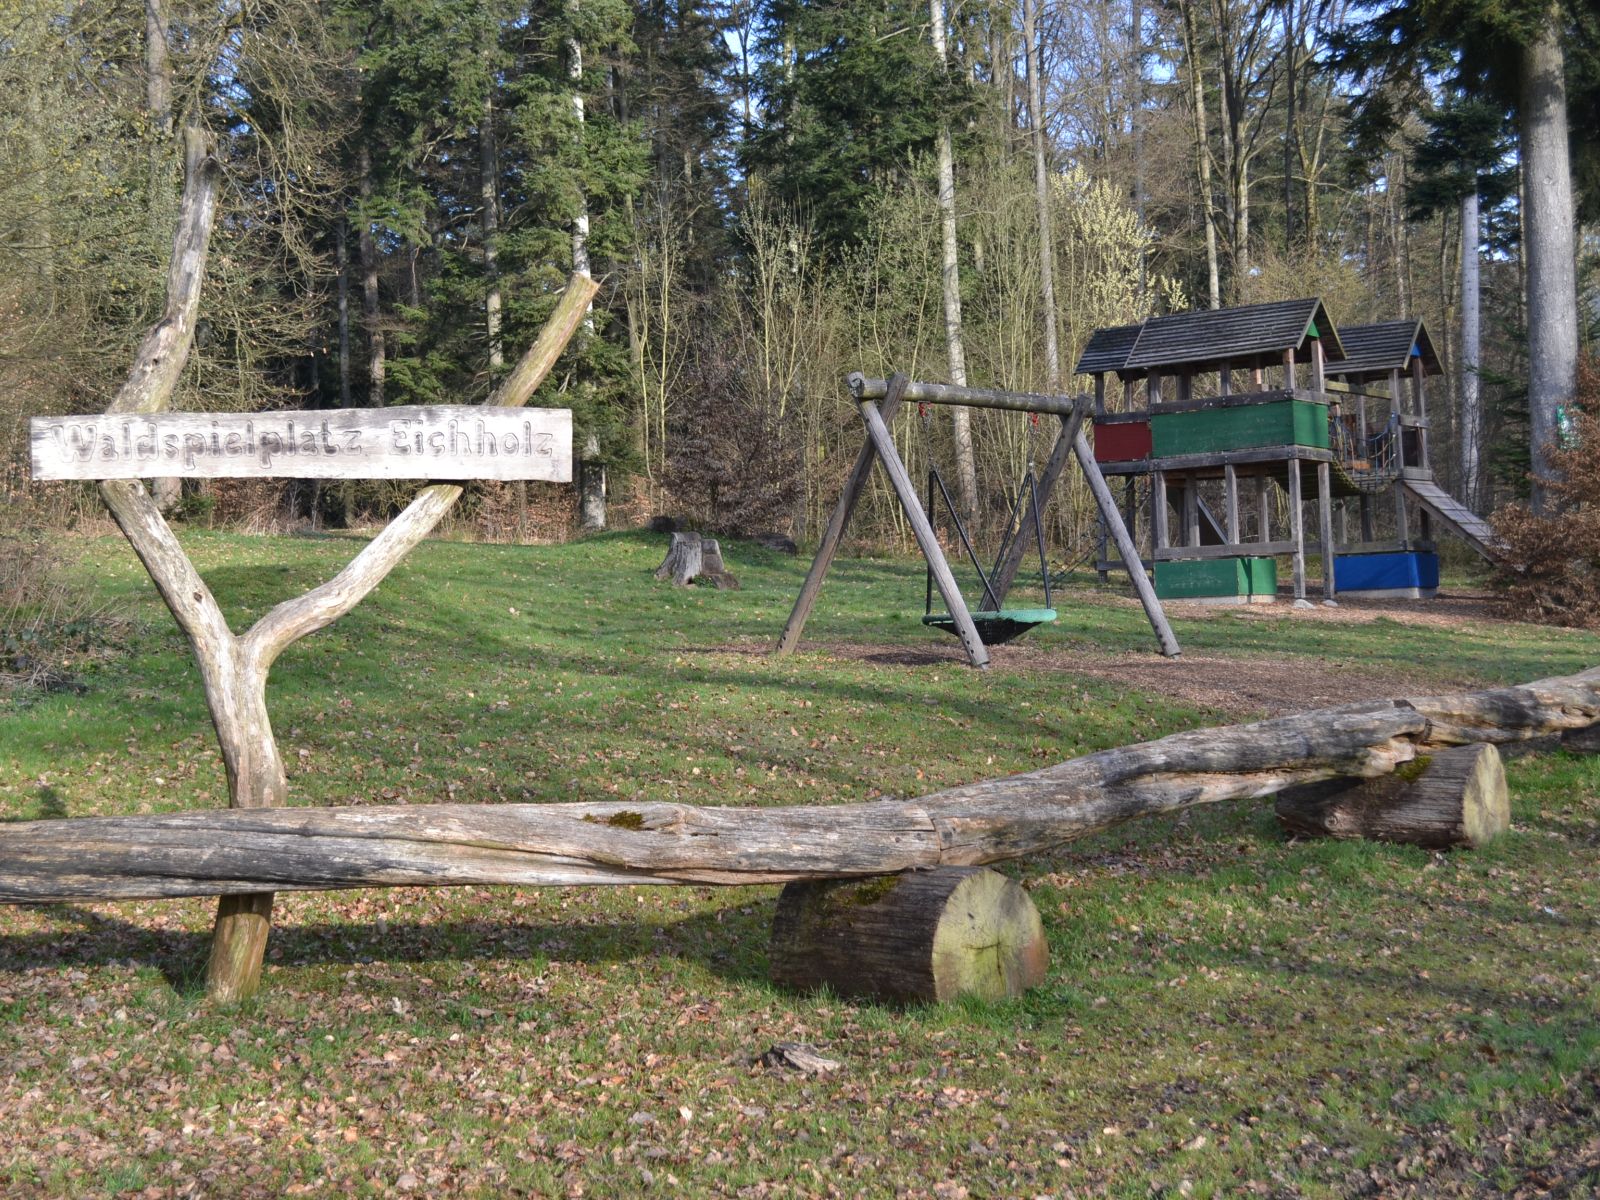 Waldspielplatz Eichholz